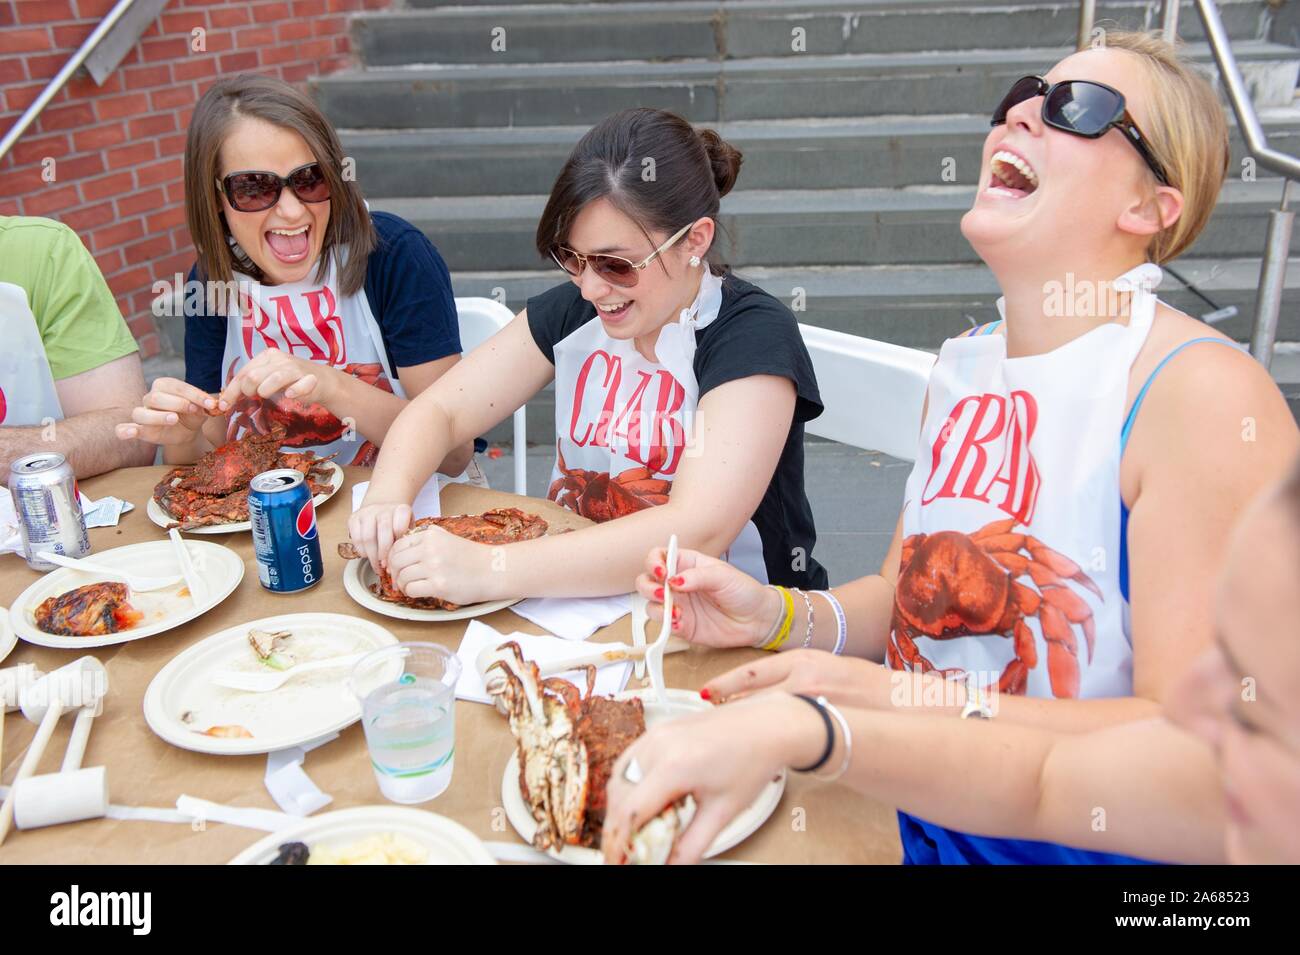 Los estudiantes participan en una fiesta del cangrejo con el tradicional plato de cangrejos azules de Maryland, en el Campus Homewood de la Universidad Johns Hopkins en Baltimore, Maryland, 21 de mayo de 2010. Desde el Homewood fotografías. () Foto de stock